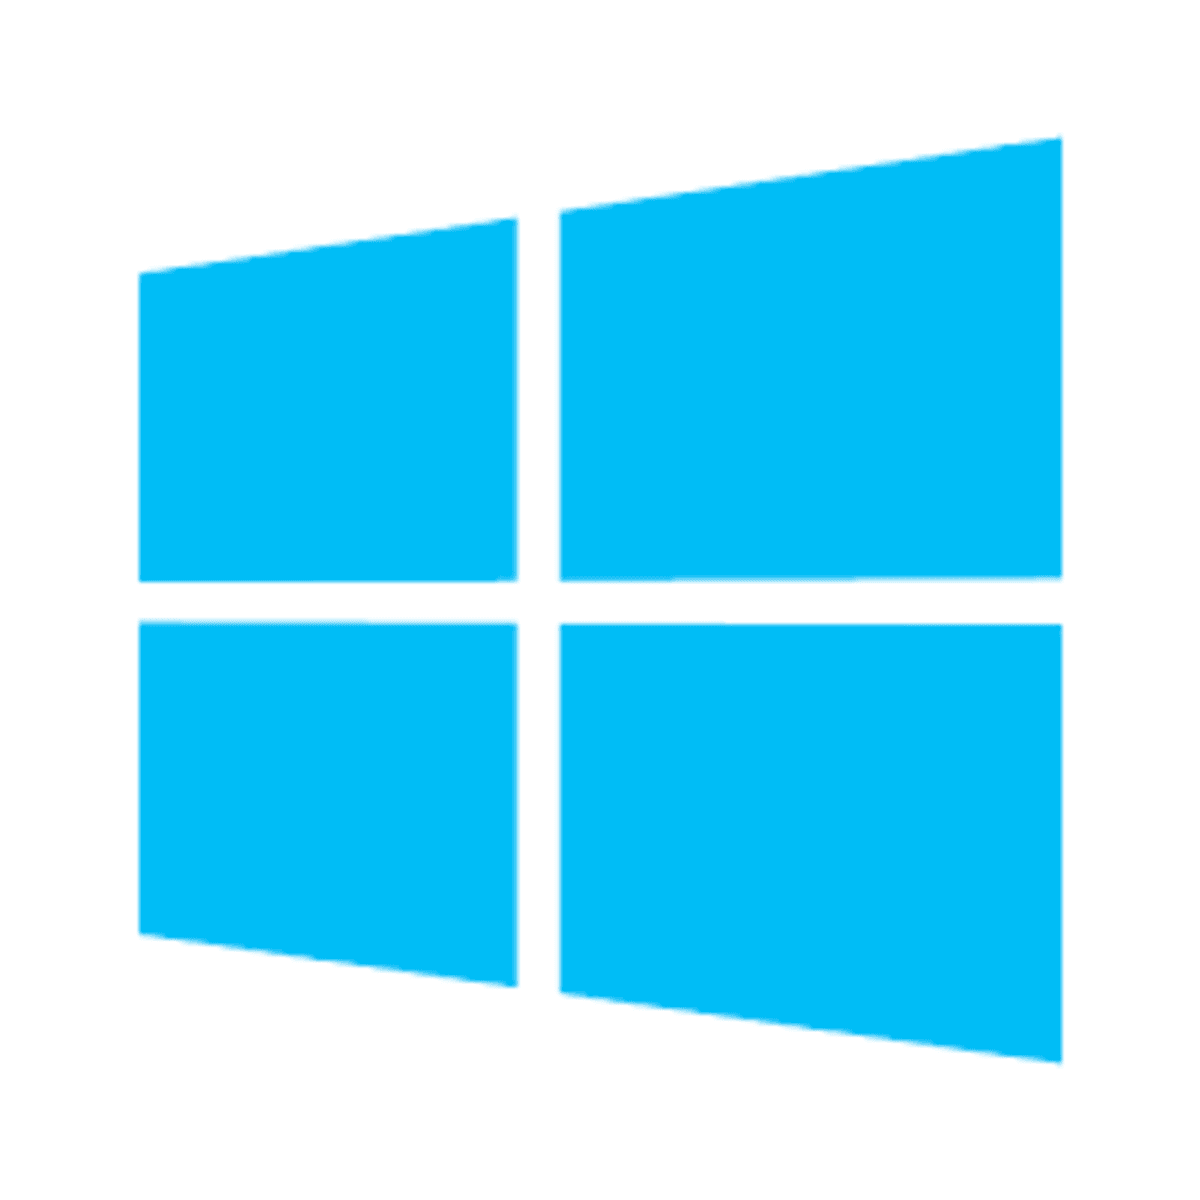 Nieuwe Windows Server 2022 is beschikbaar als preview image